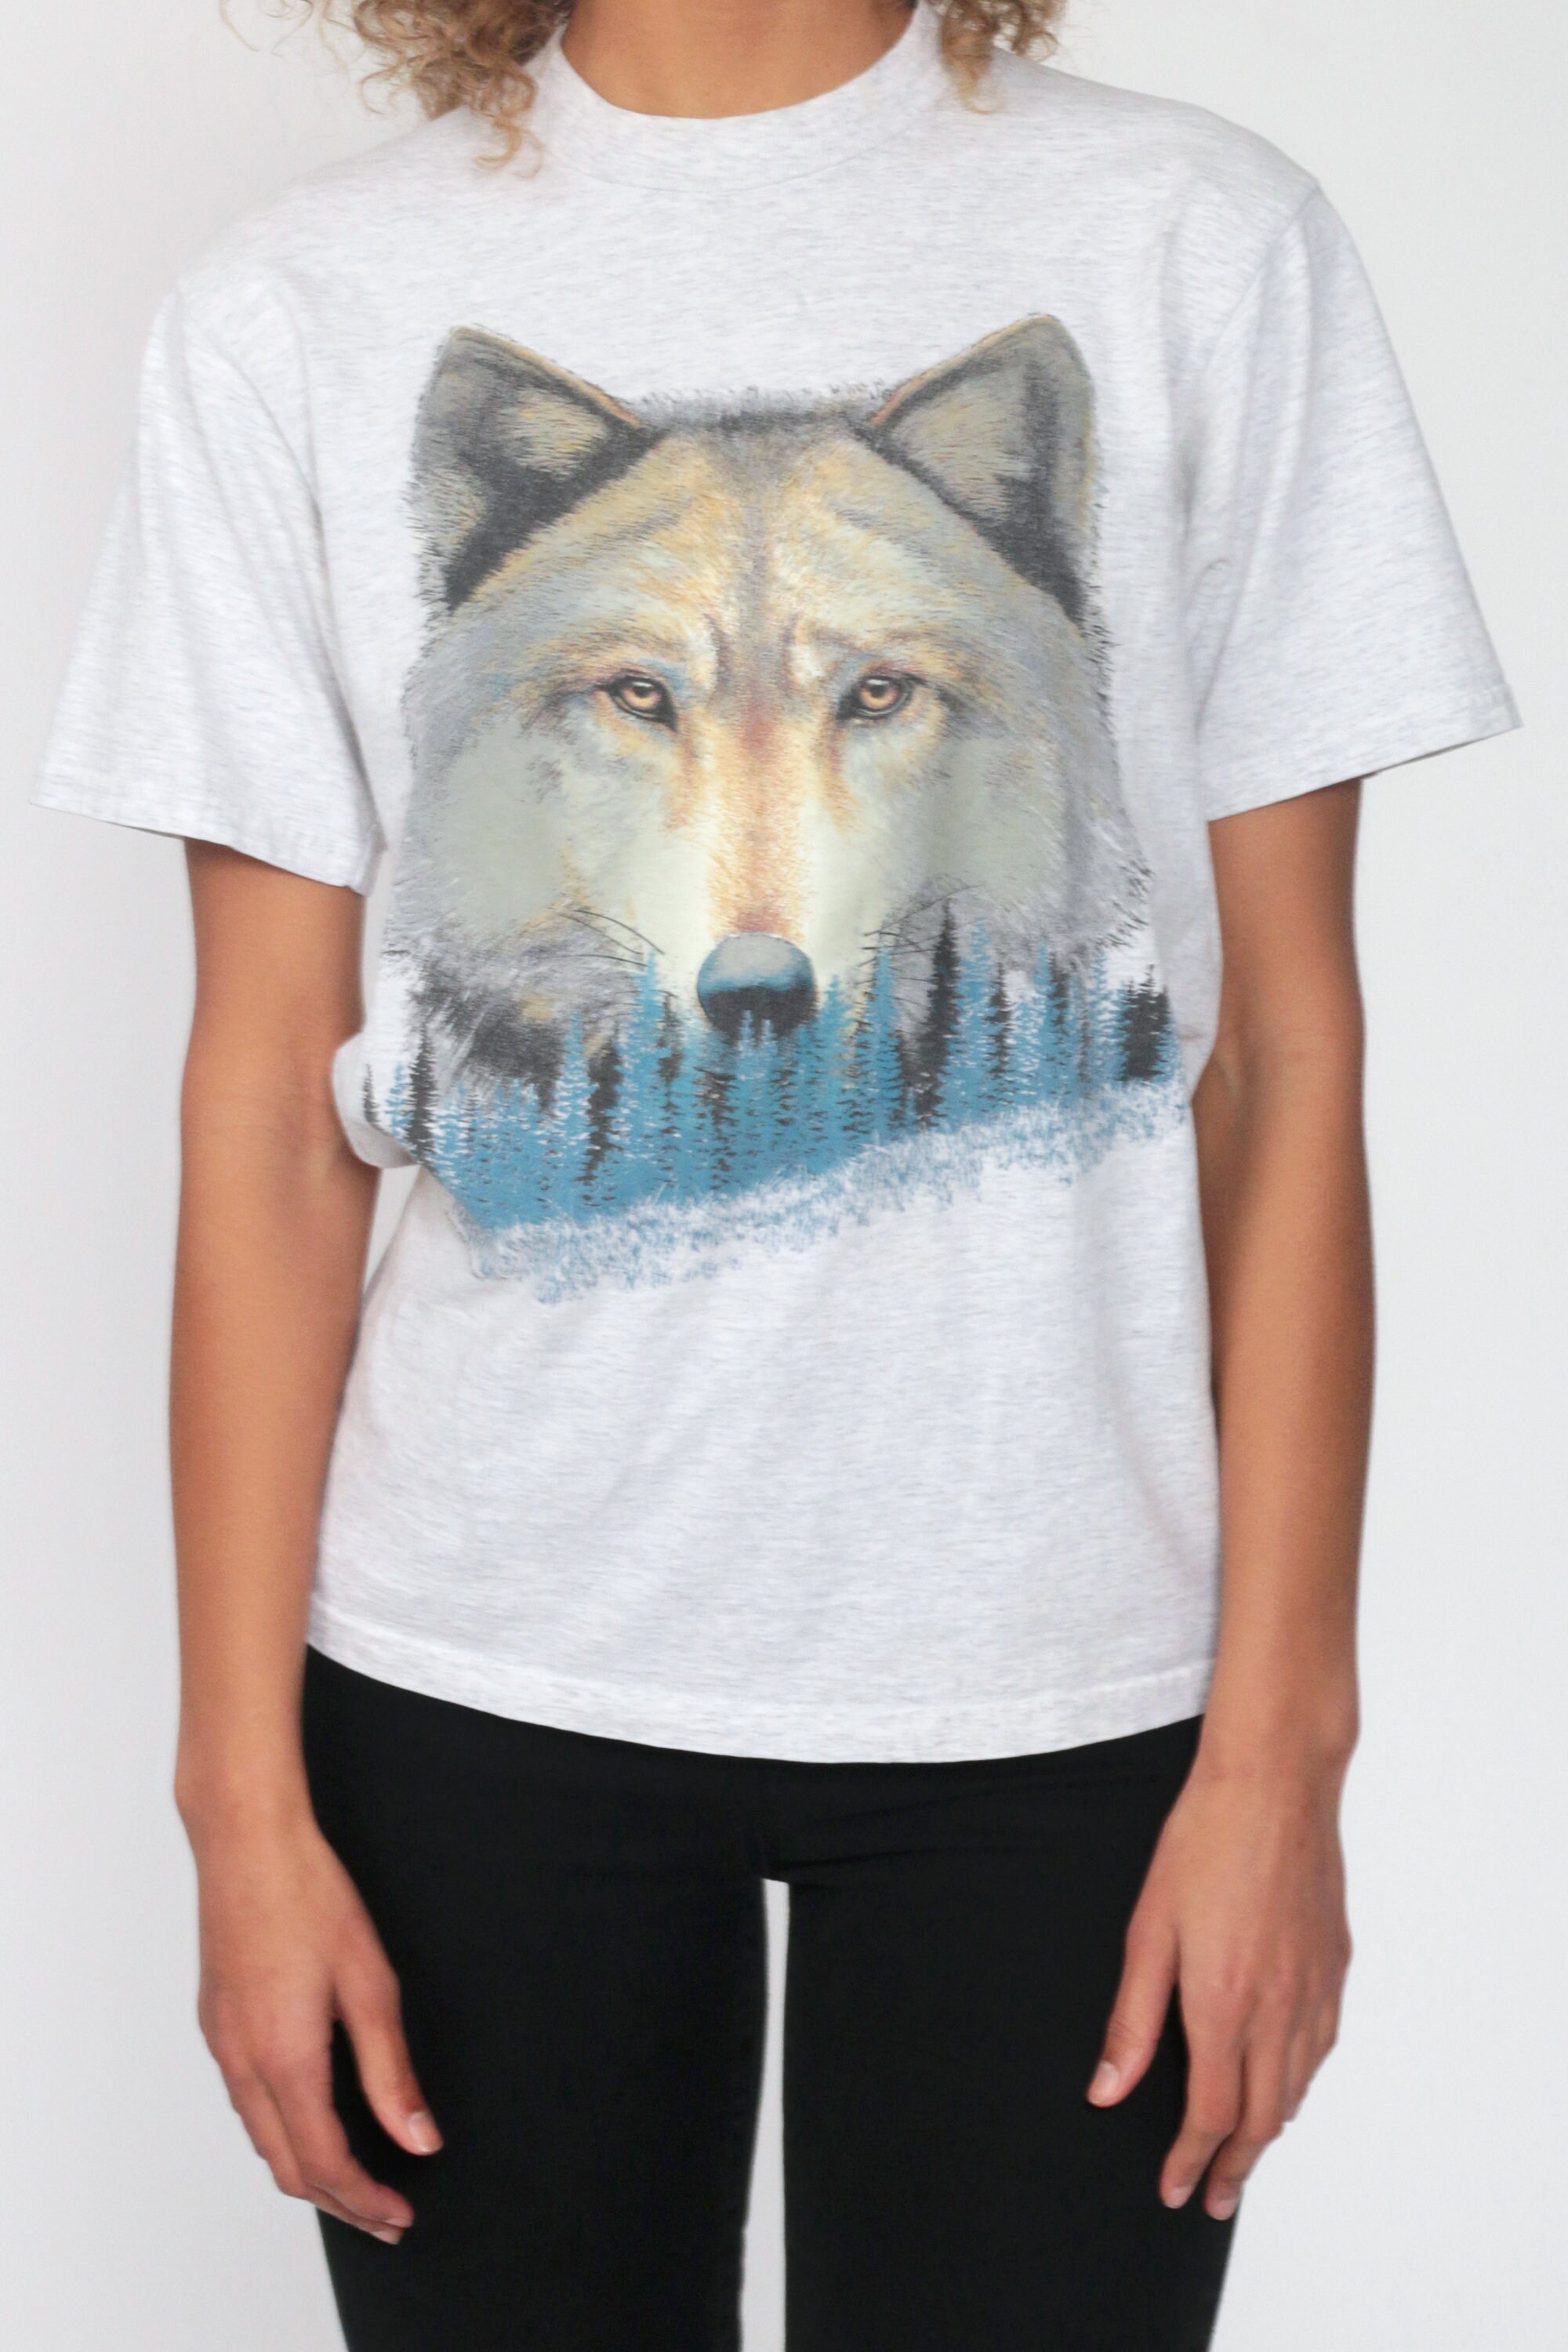 Wolf Tshirt Animal Shirt 90s Wolf Print TShirt Distressed | Etsy